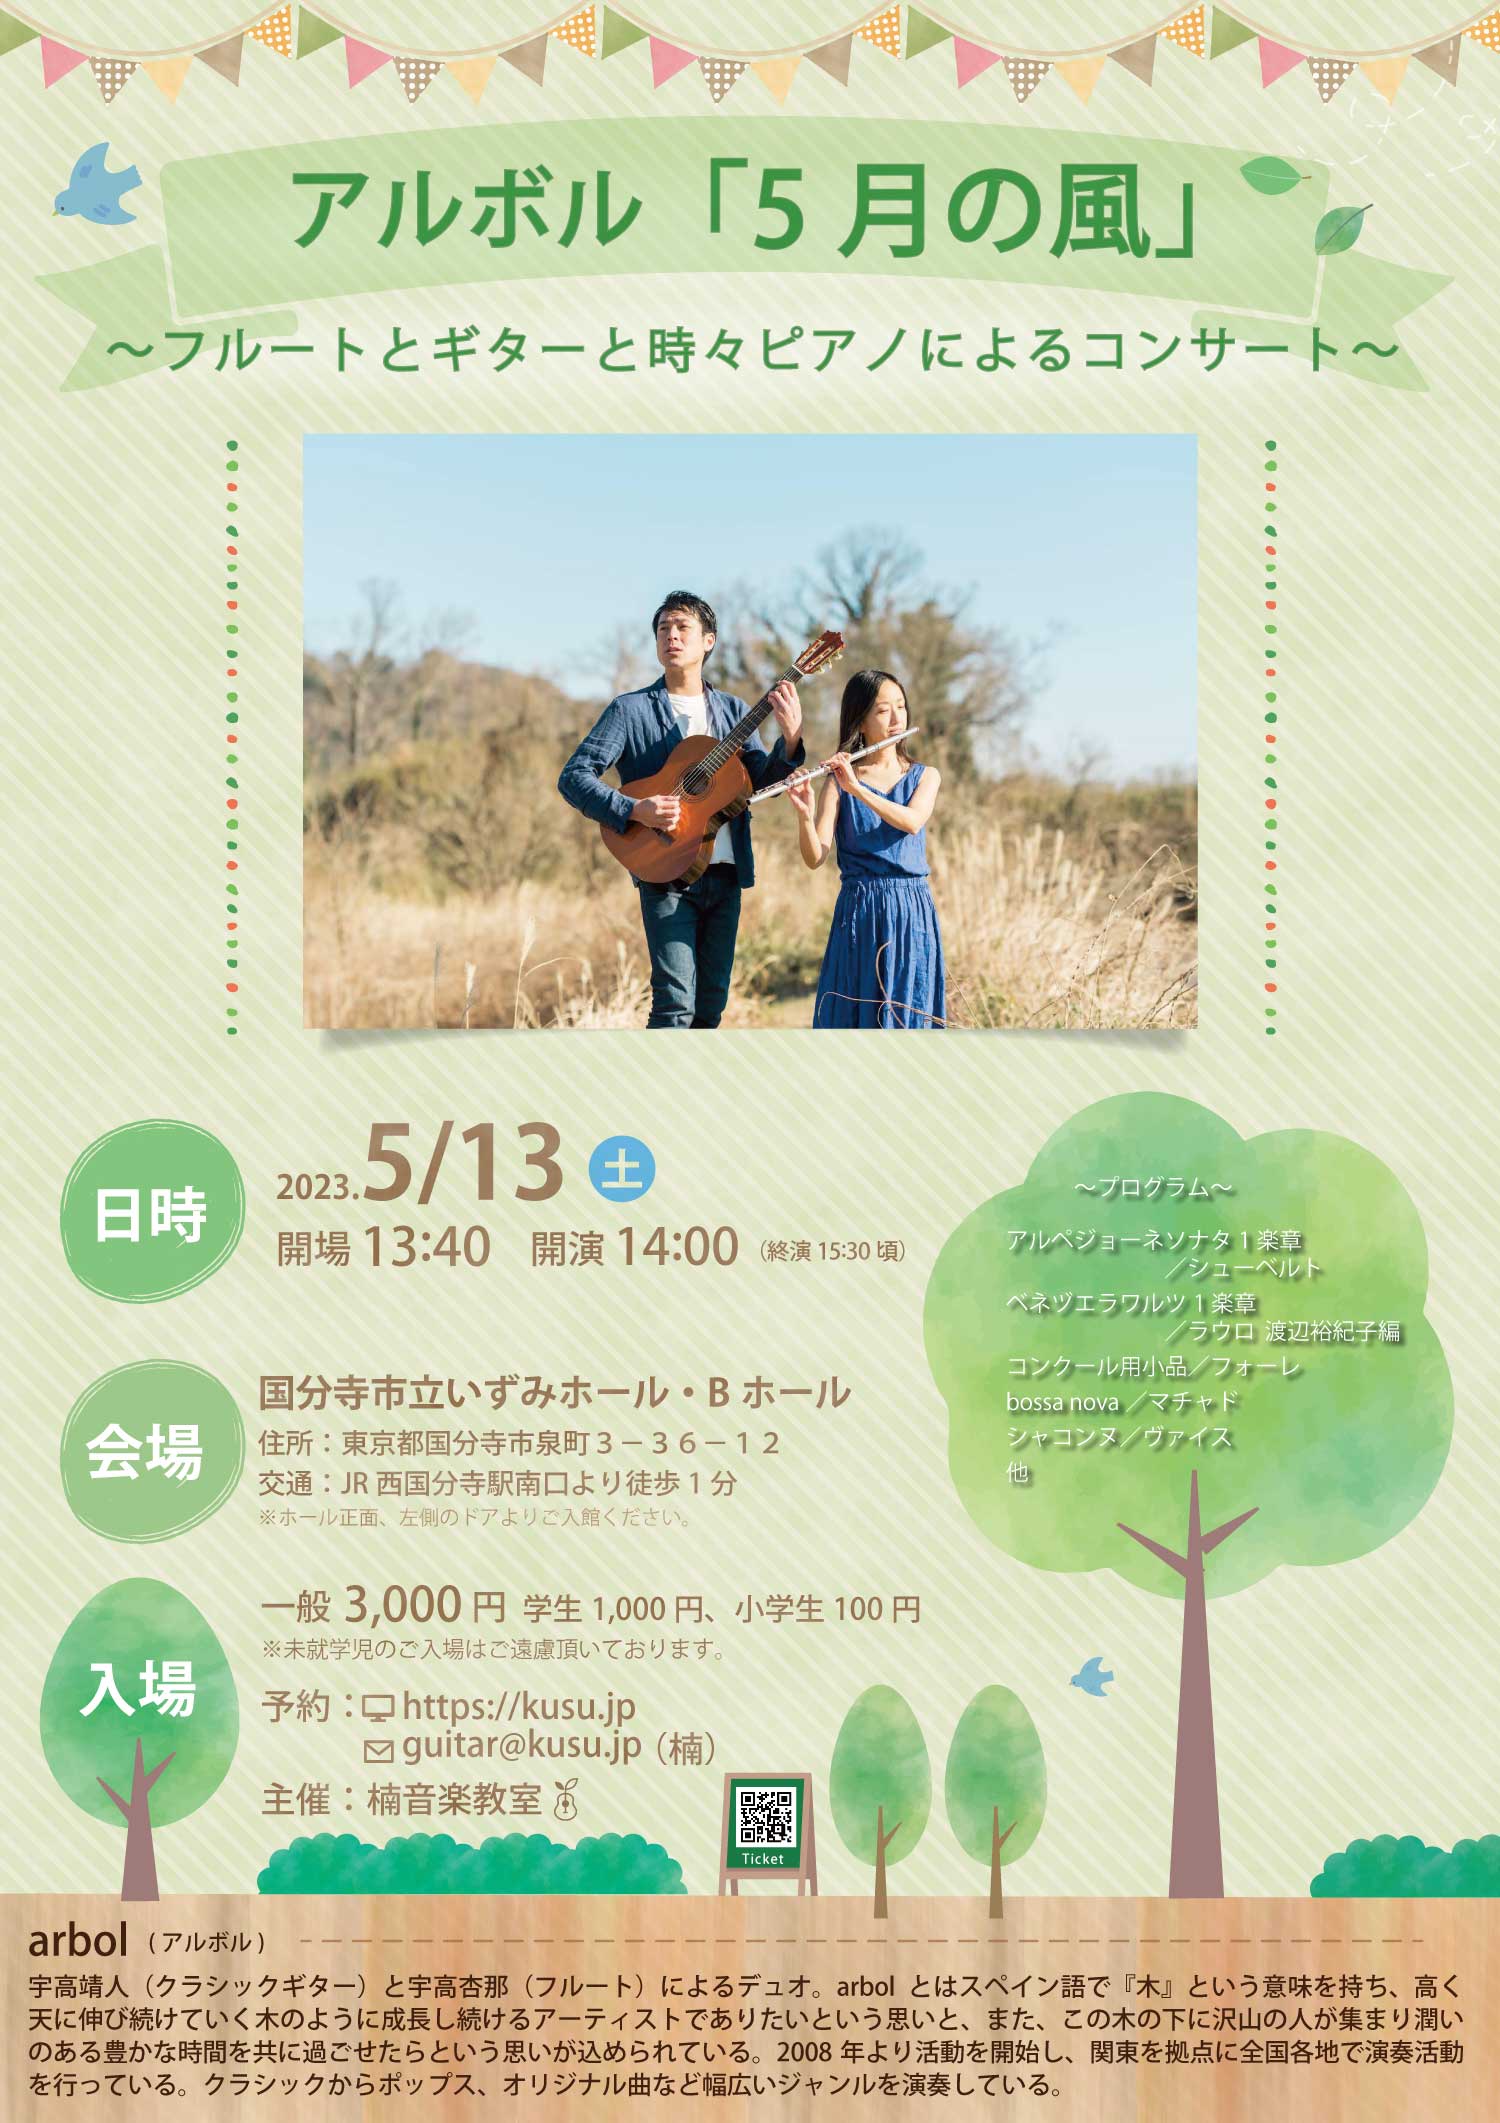 アルボル東京公演 “5月の風”